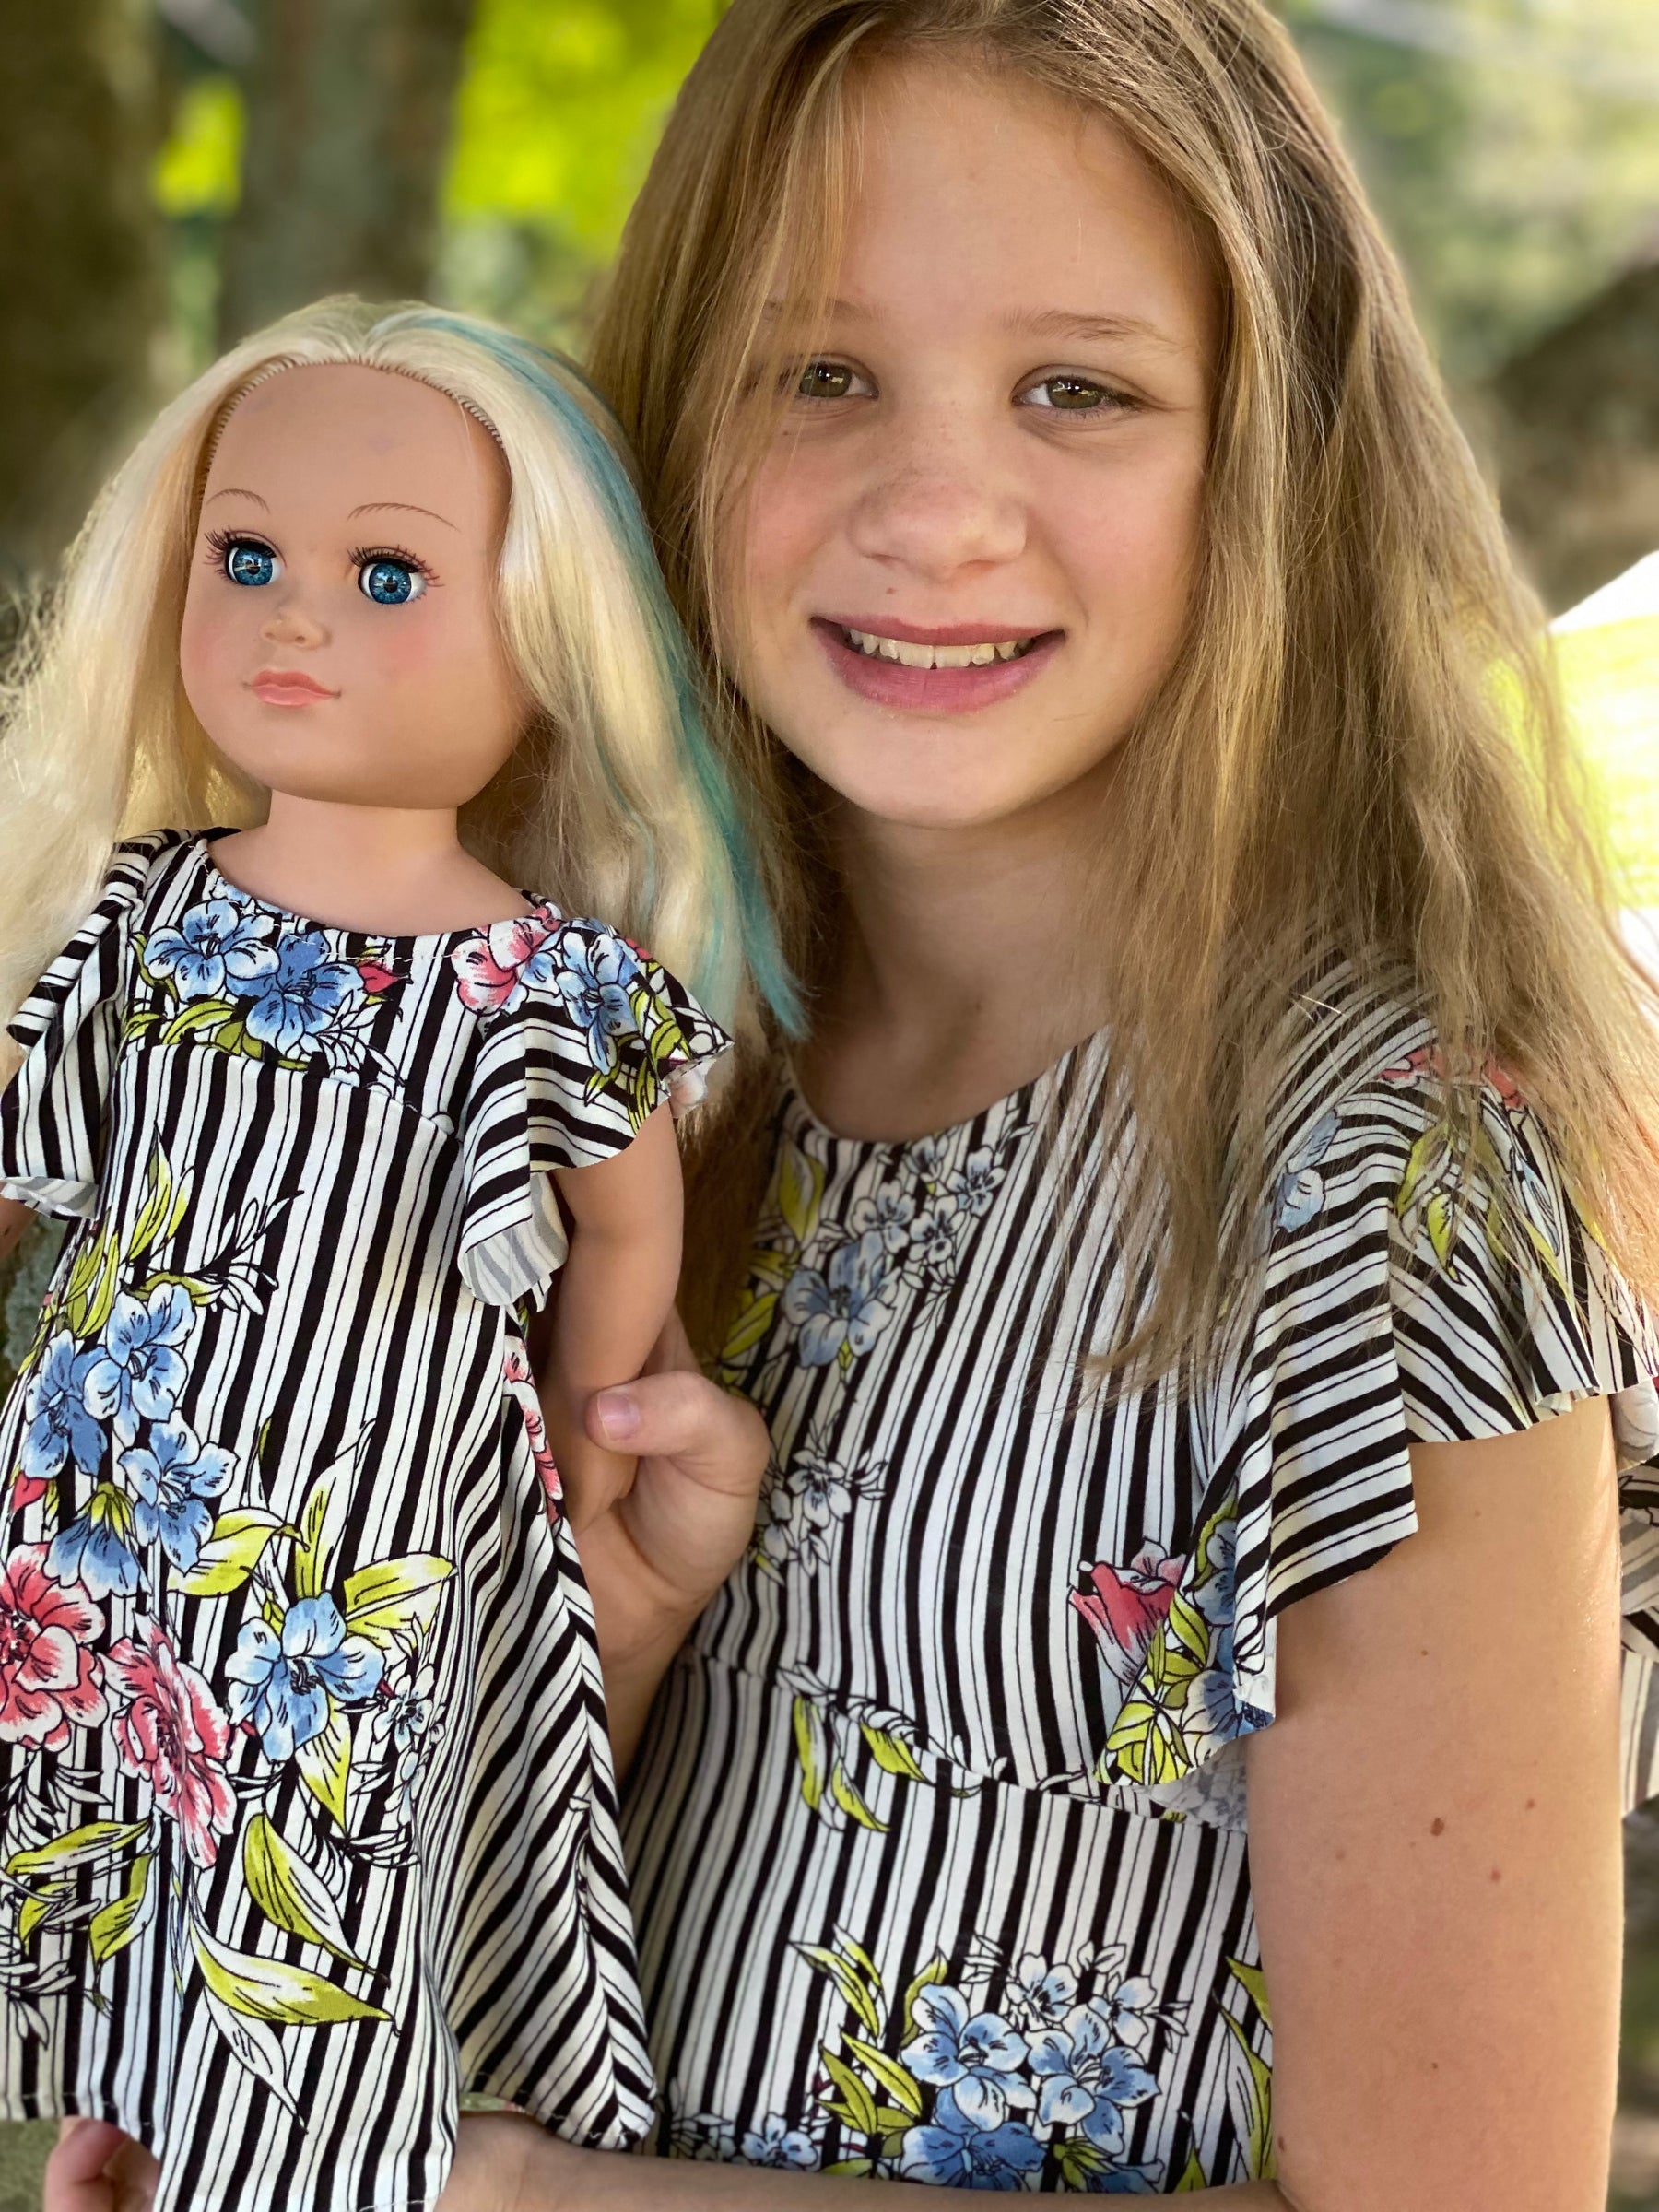 Be Dreamy Doll Dress Pattern